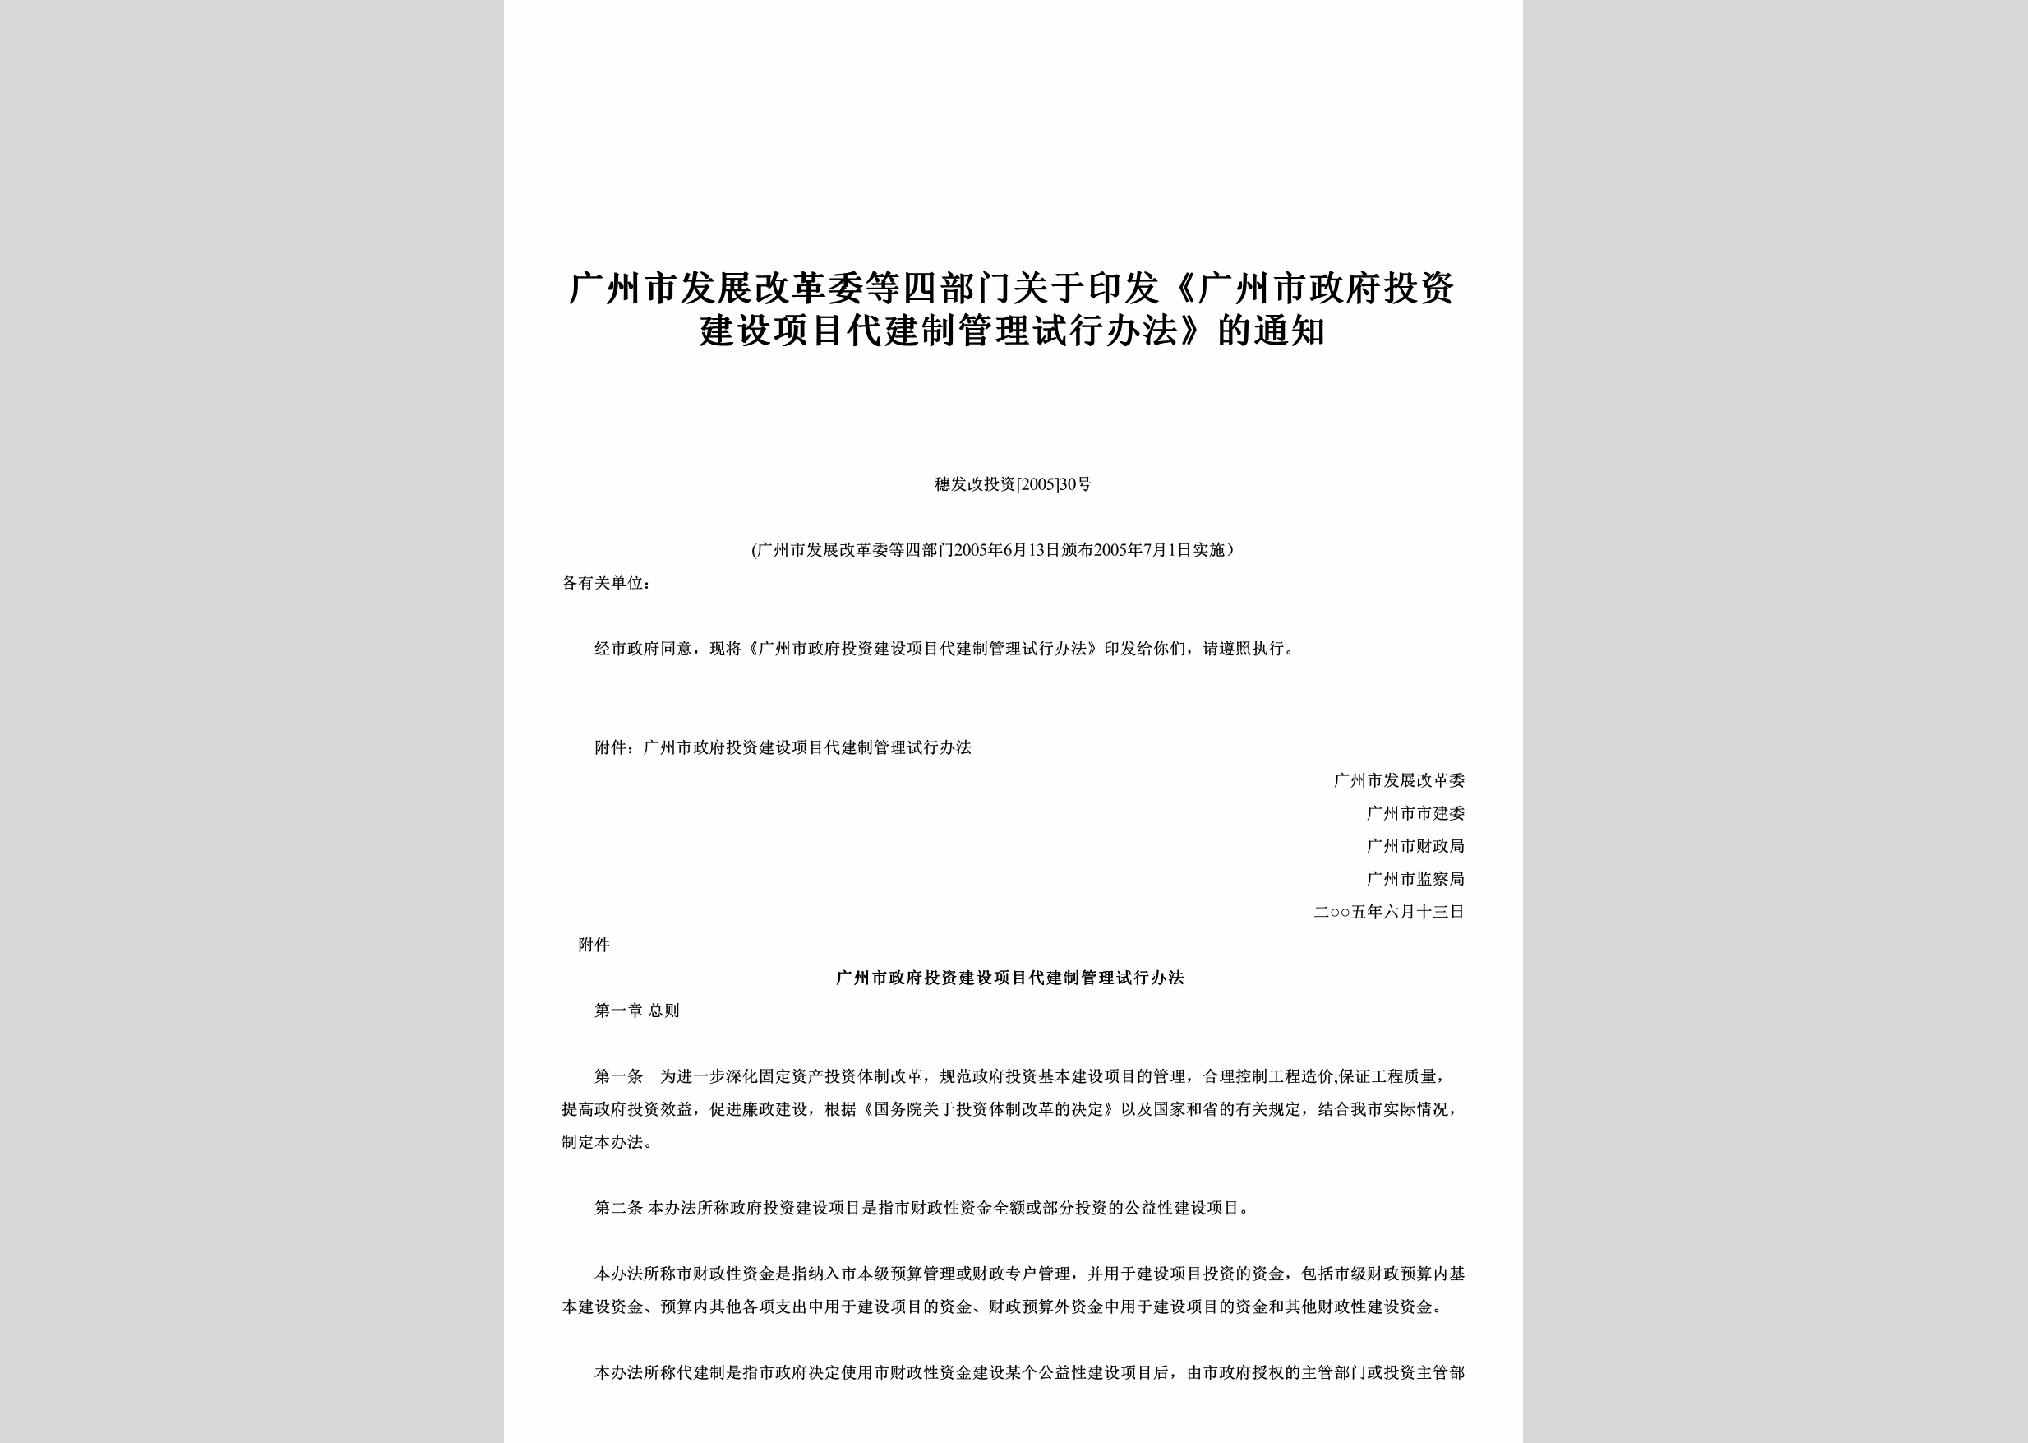 穗发改投资[2005]30号：关于印发《广州市政府投资建设项目代建制管理试行办法》的通知